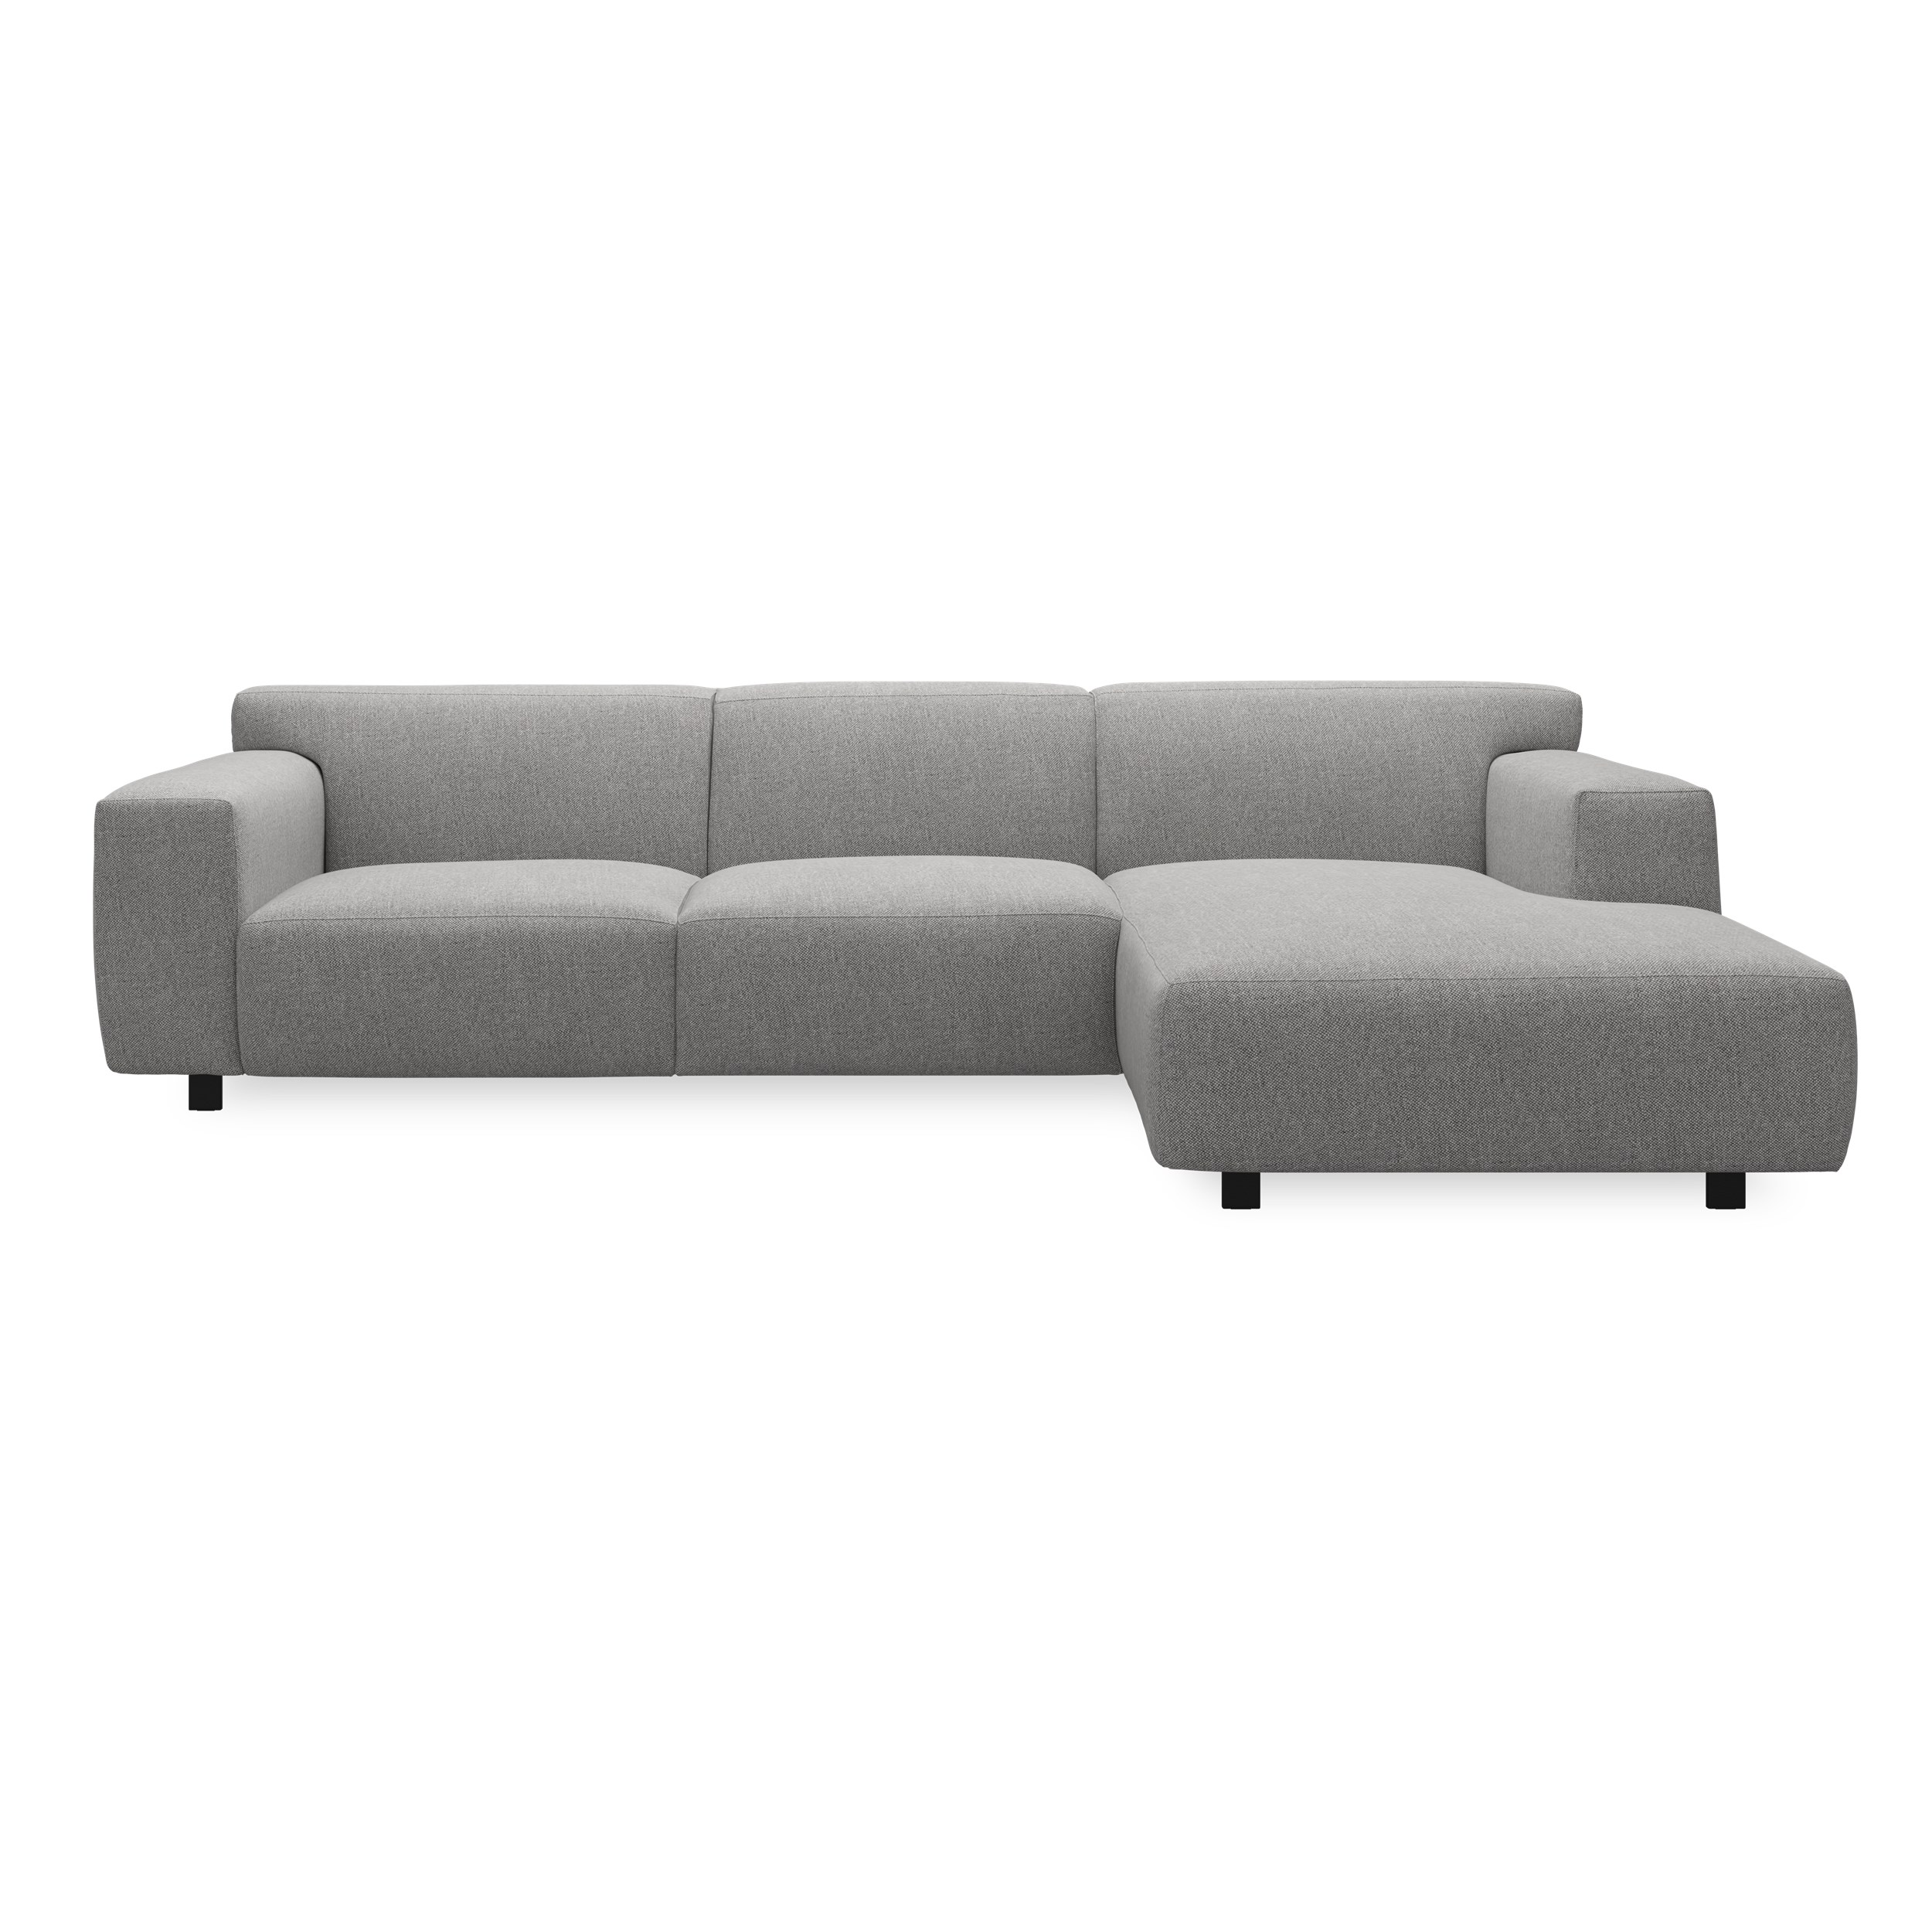 Siena højrevendt sofa med chaiselong 